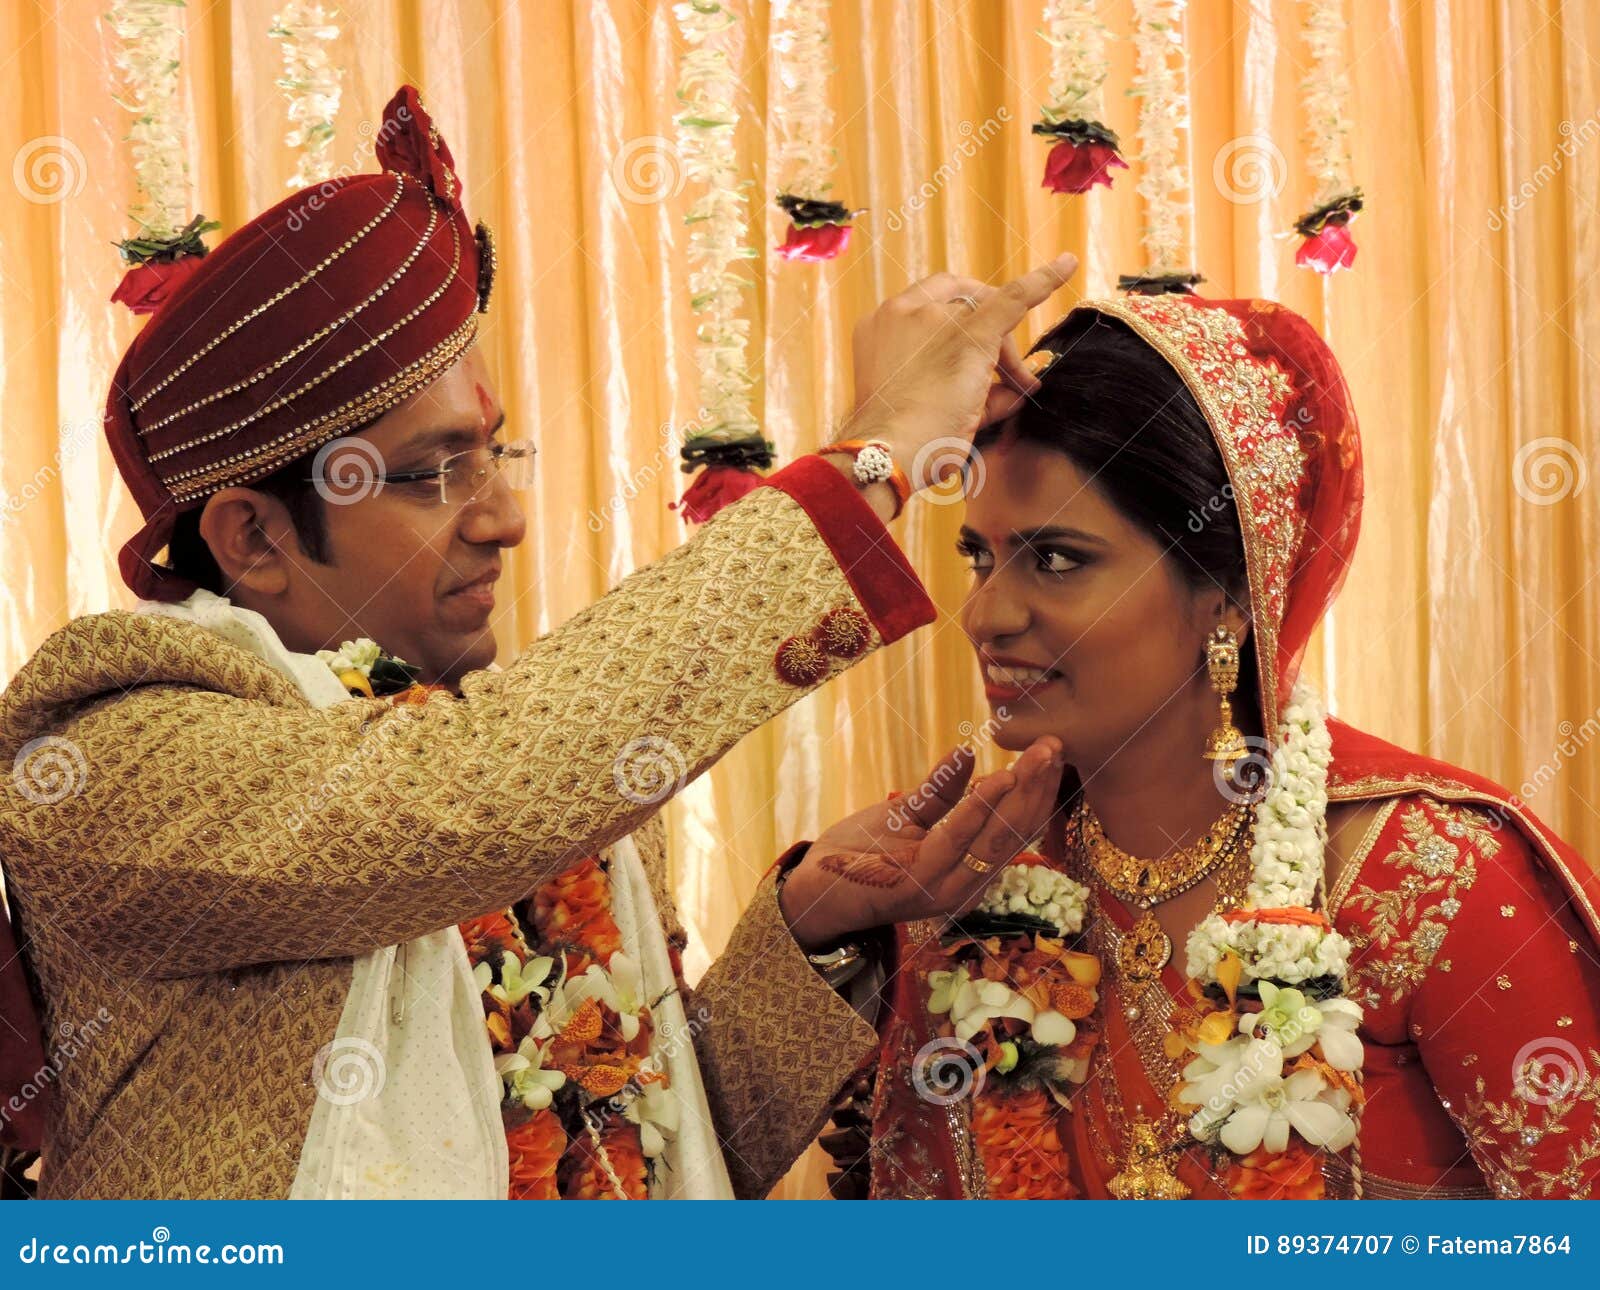 世界各地婚礼传统：印度婚礼 - 知乎